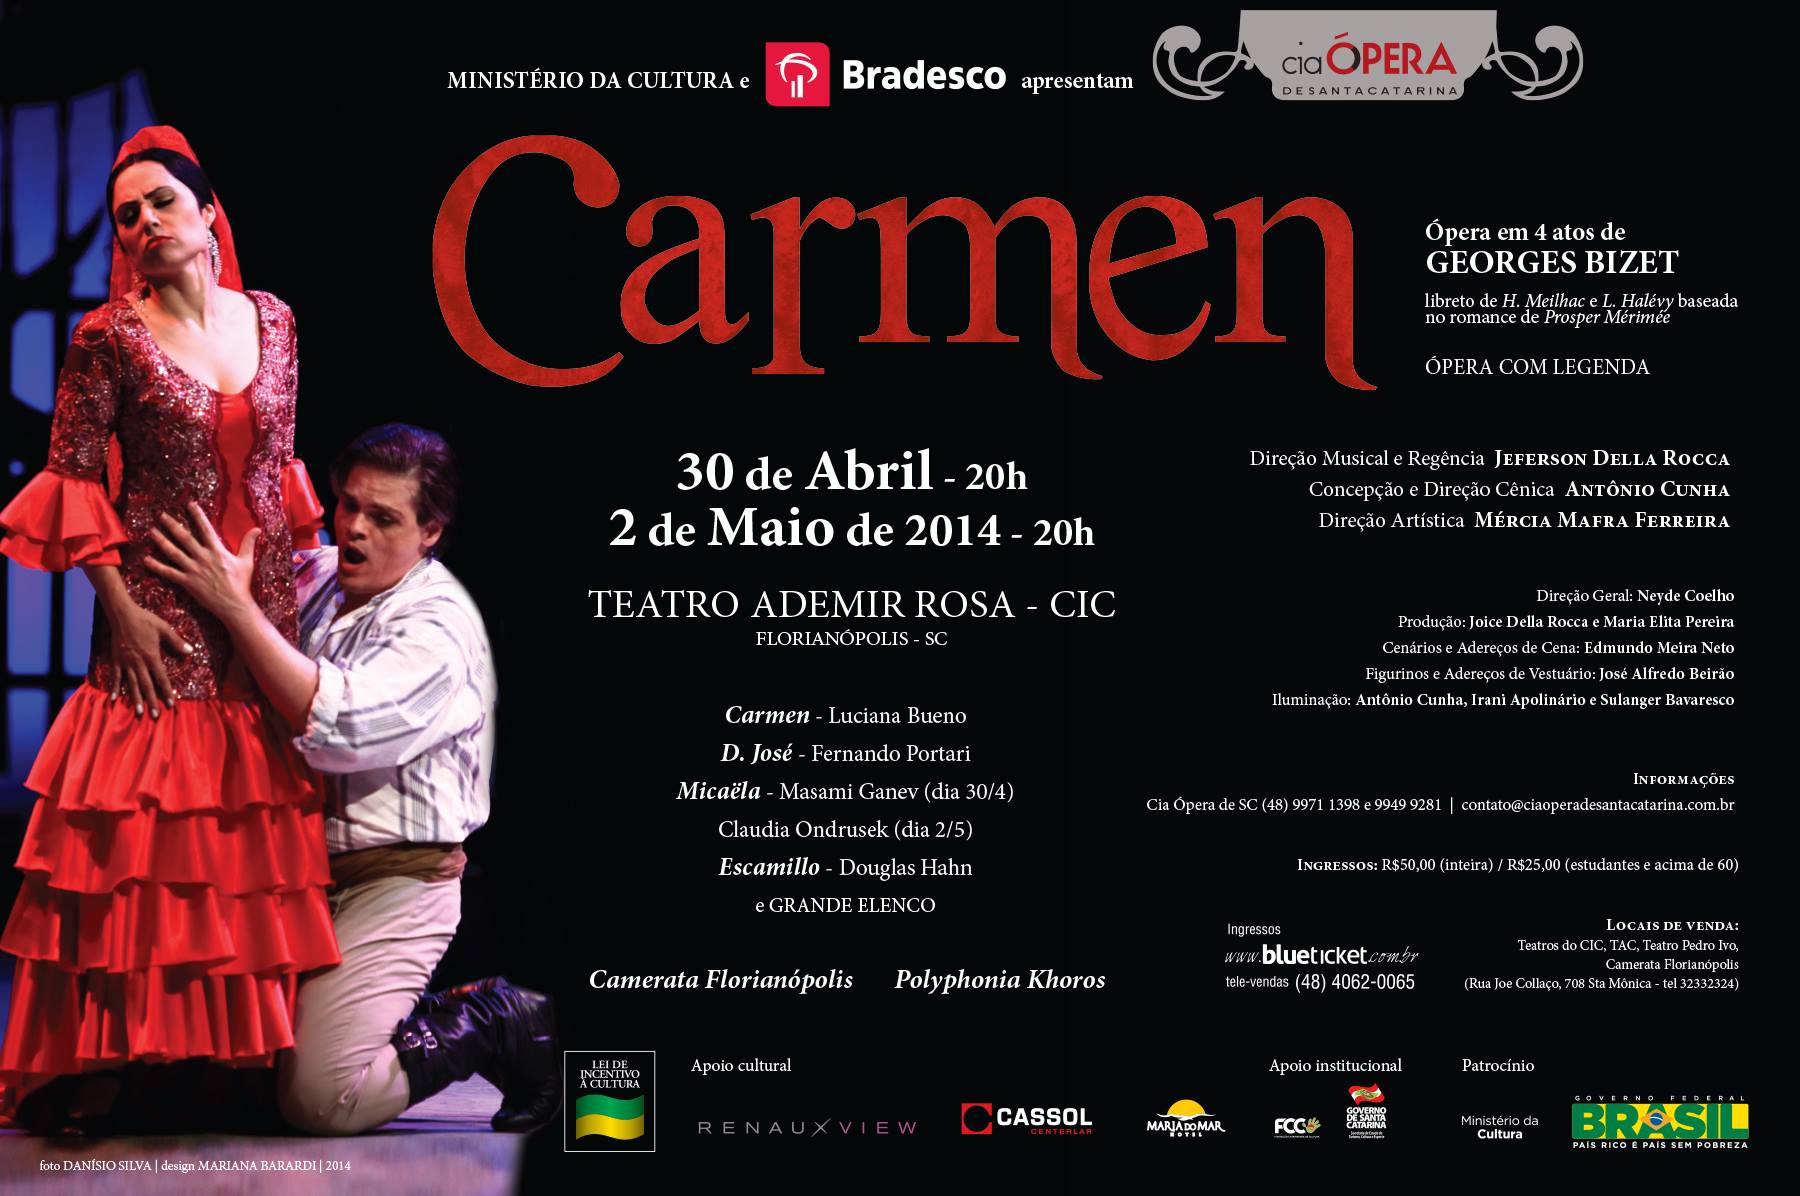 Cia Ópera de SC apresenta a ópera "Carmen" de Georges Bizet